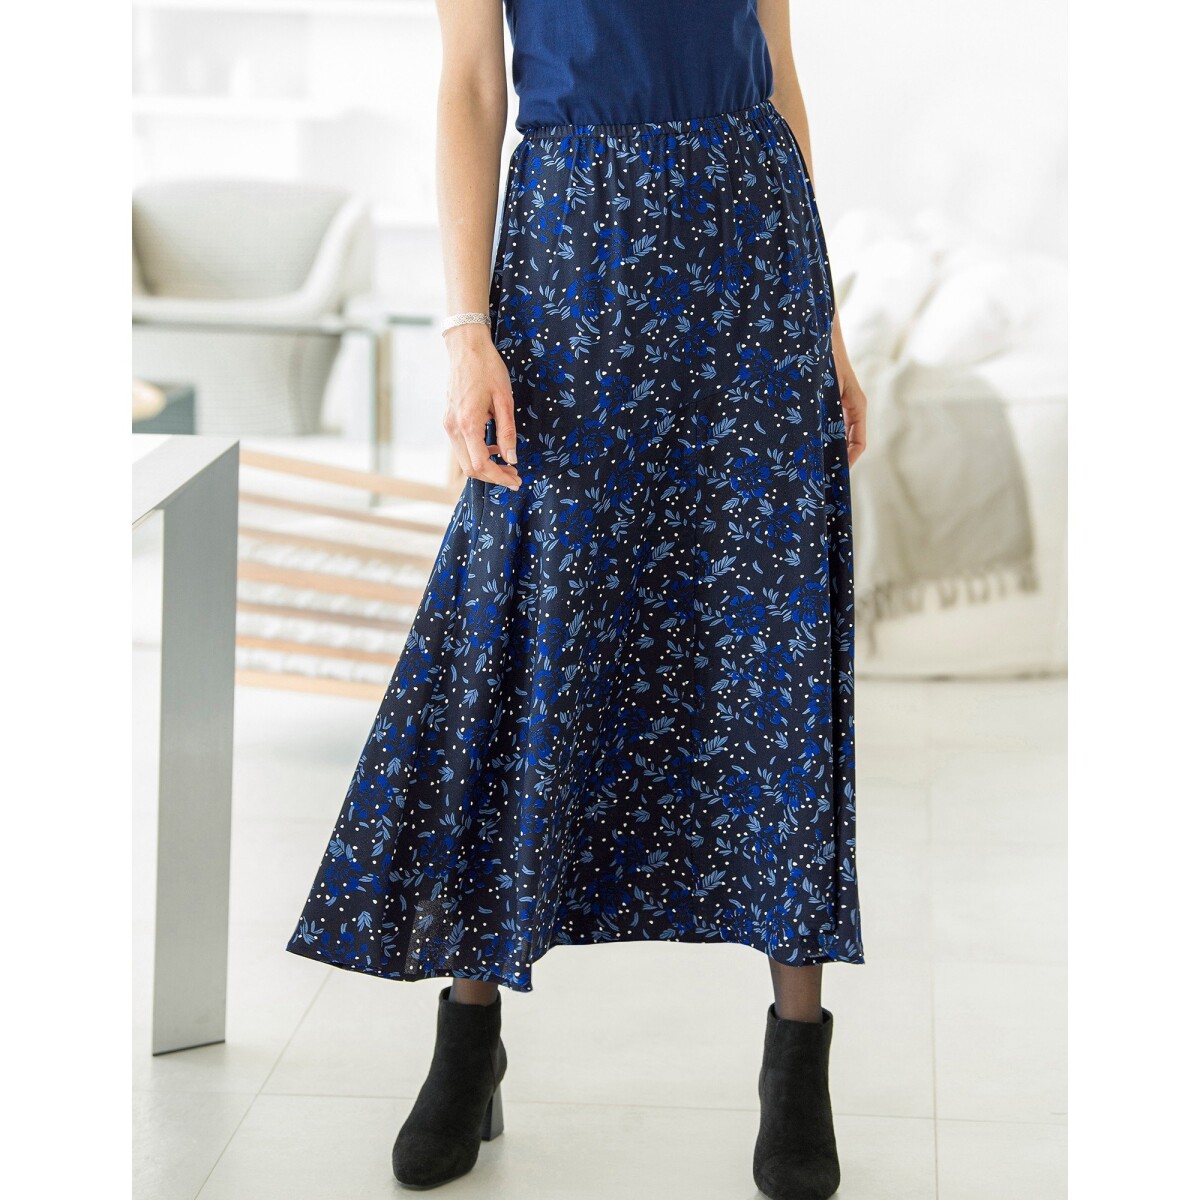 Krepová dlhá sukňa s potlačou čierna modrá 40